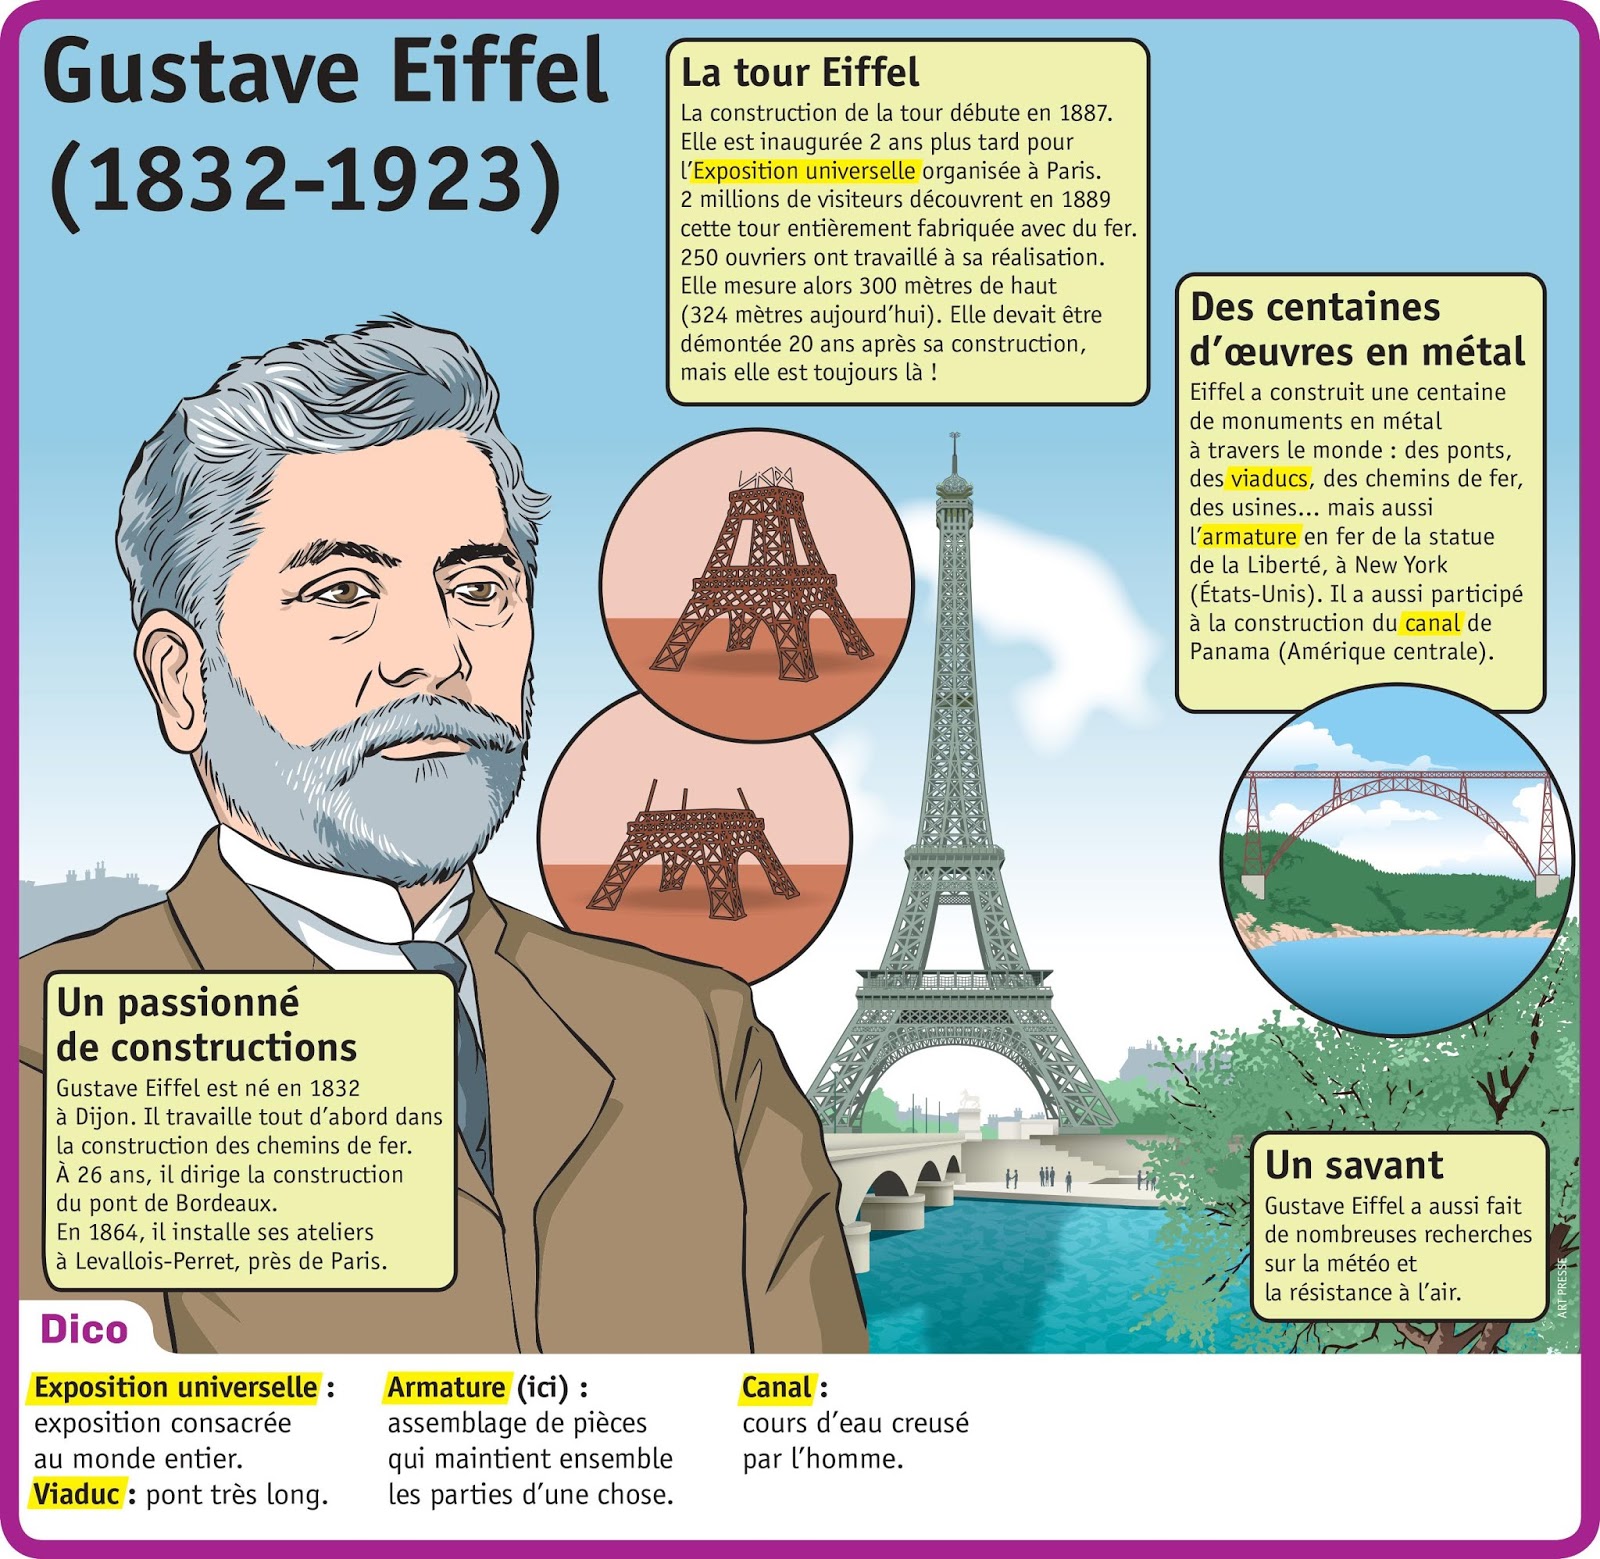 TICs en FLE: Petit parcours audiovisuel pour découvrir la Tour Eiffel